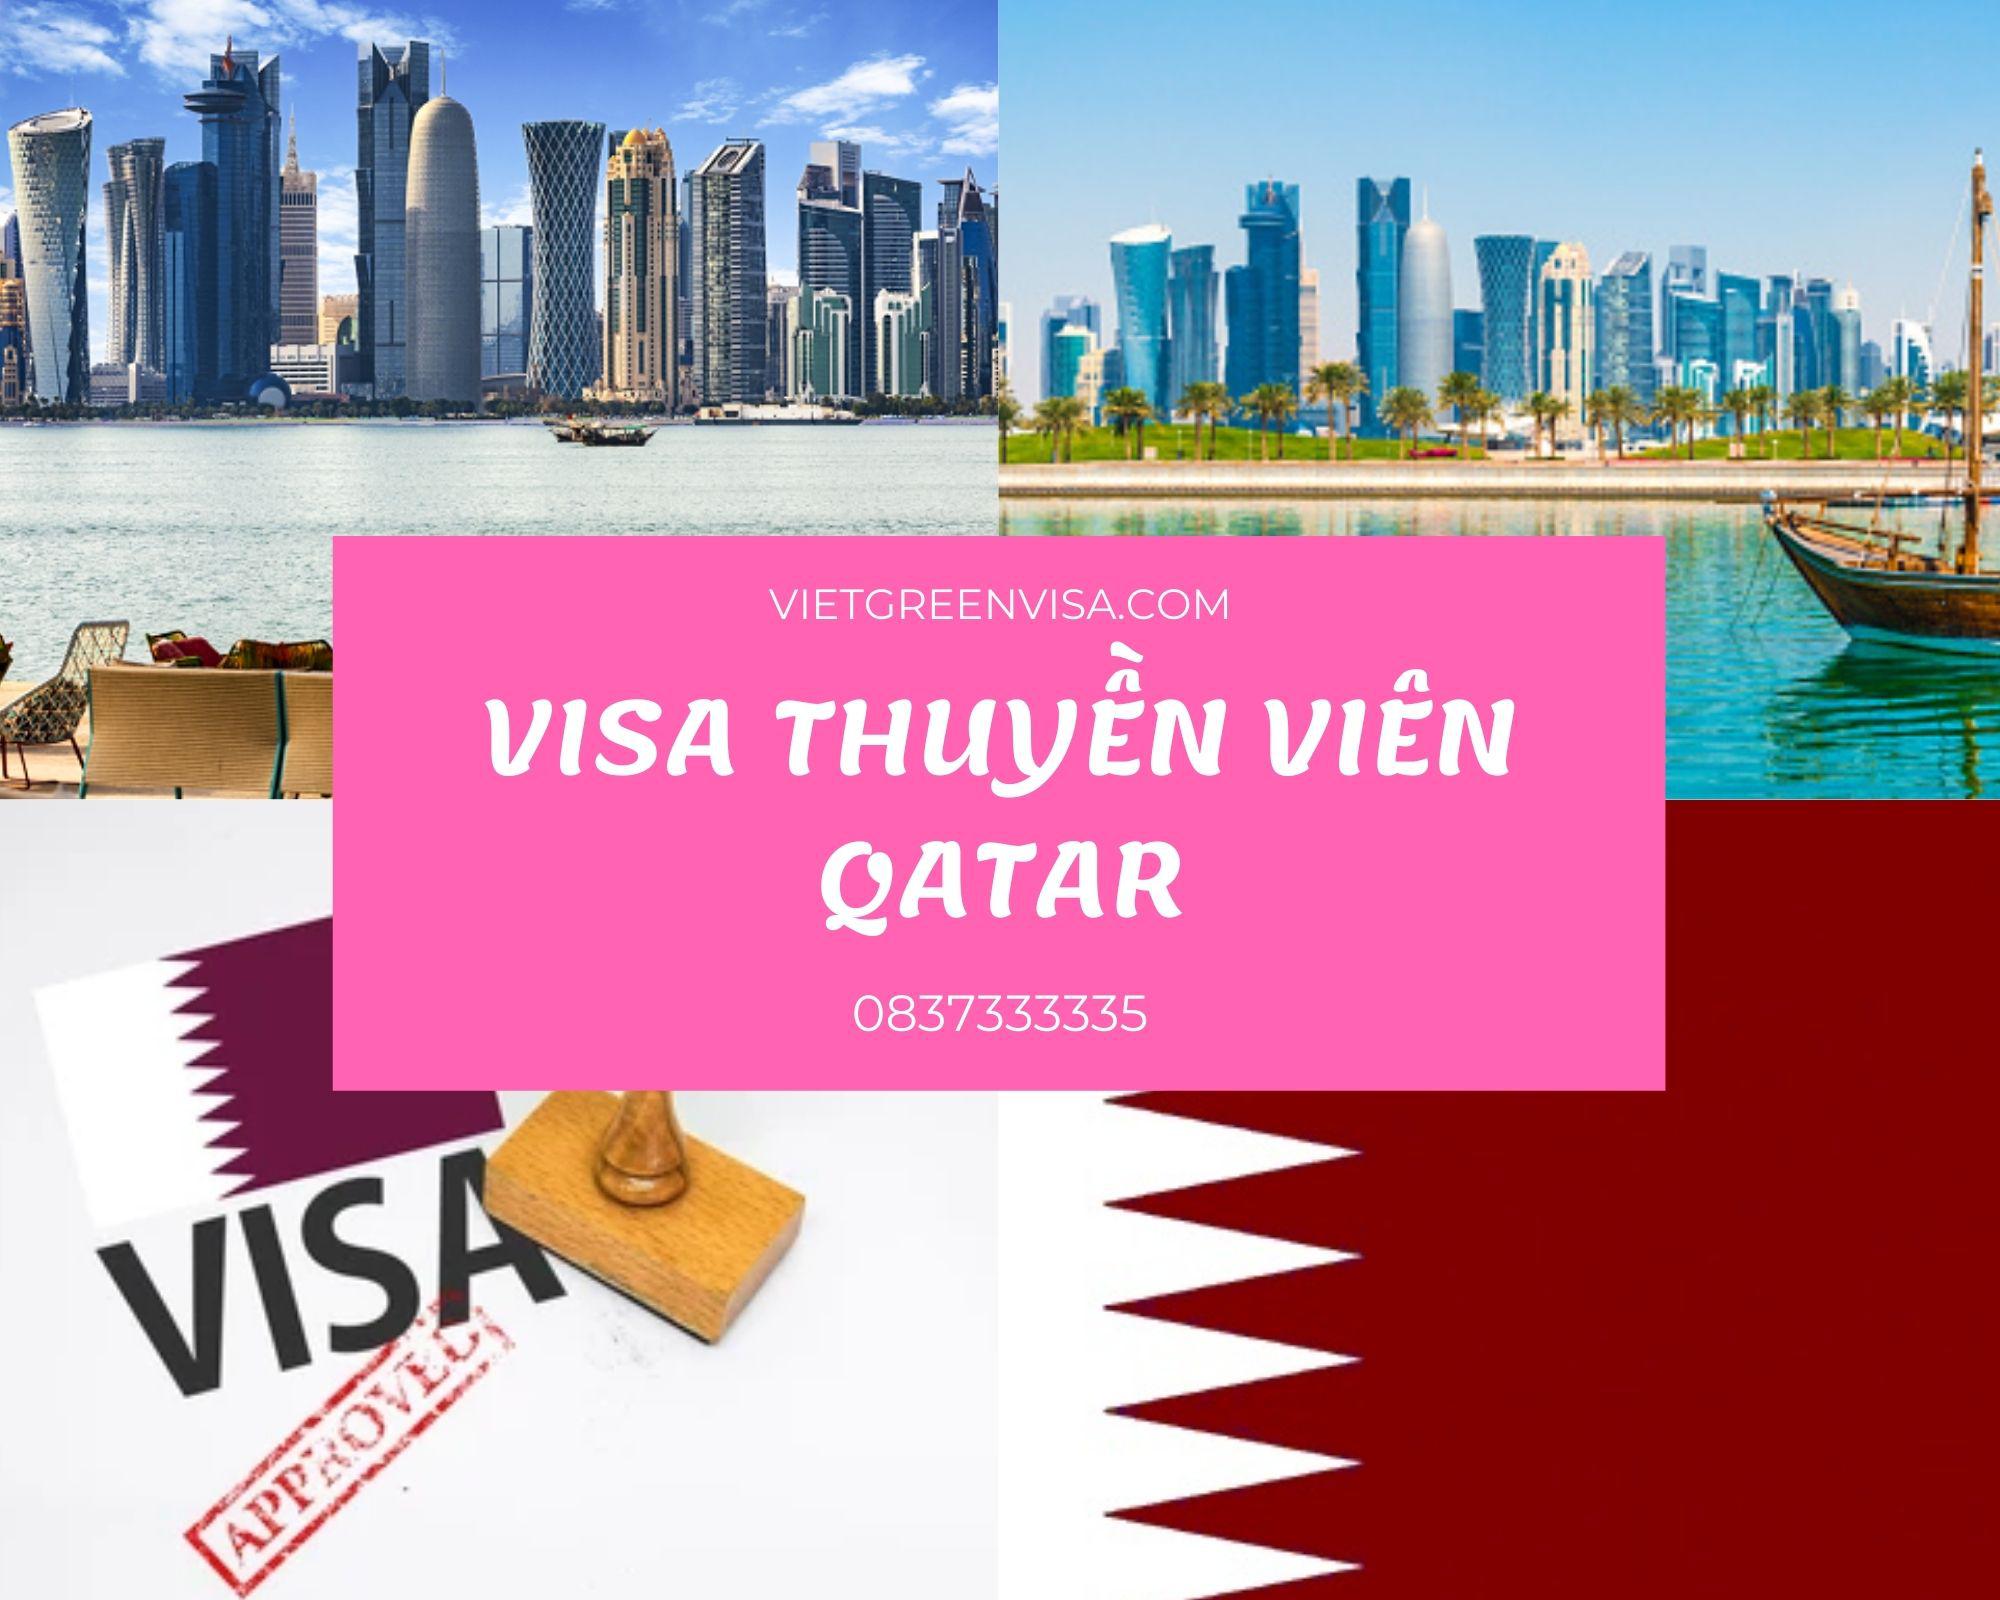 Visa thuyền viên đi Qatar, Làm Visa Qatar diện thuyền viên